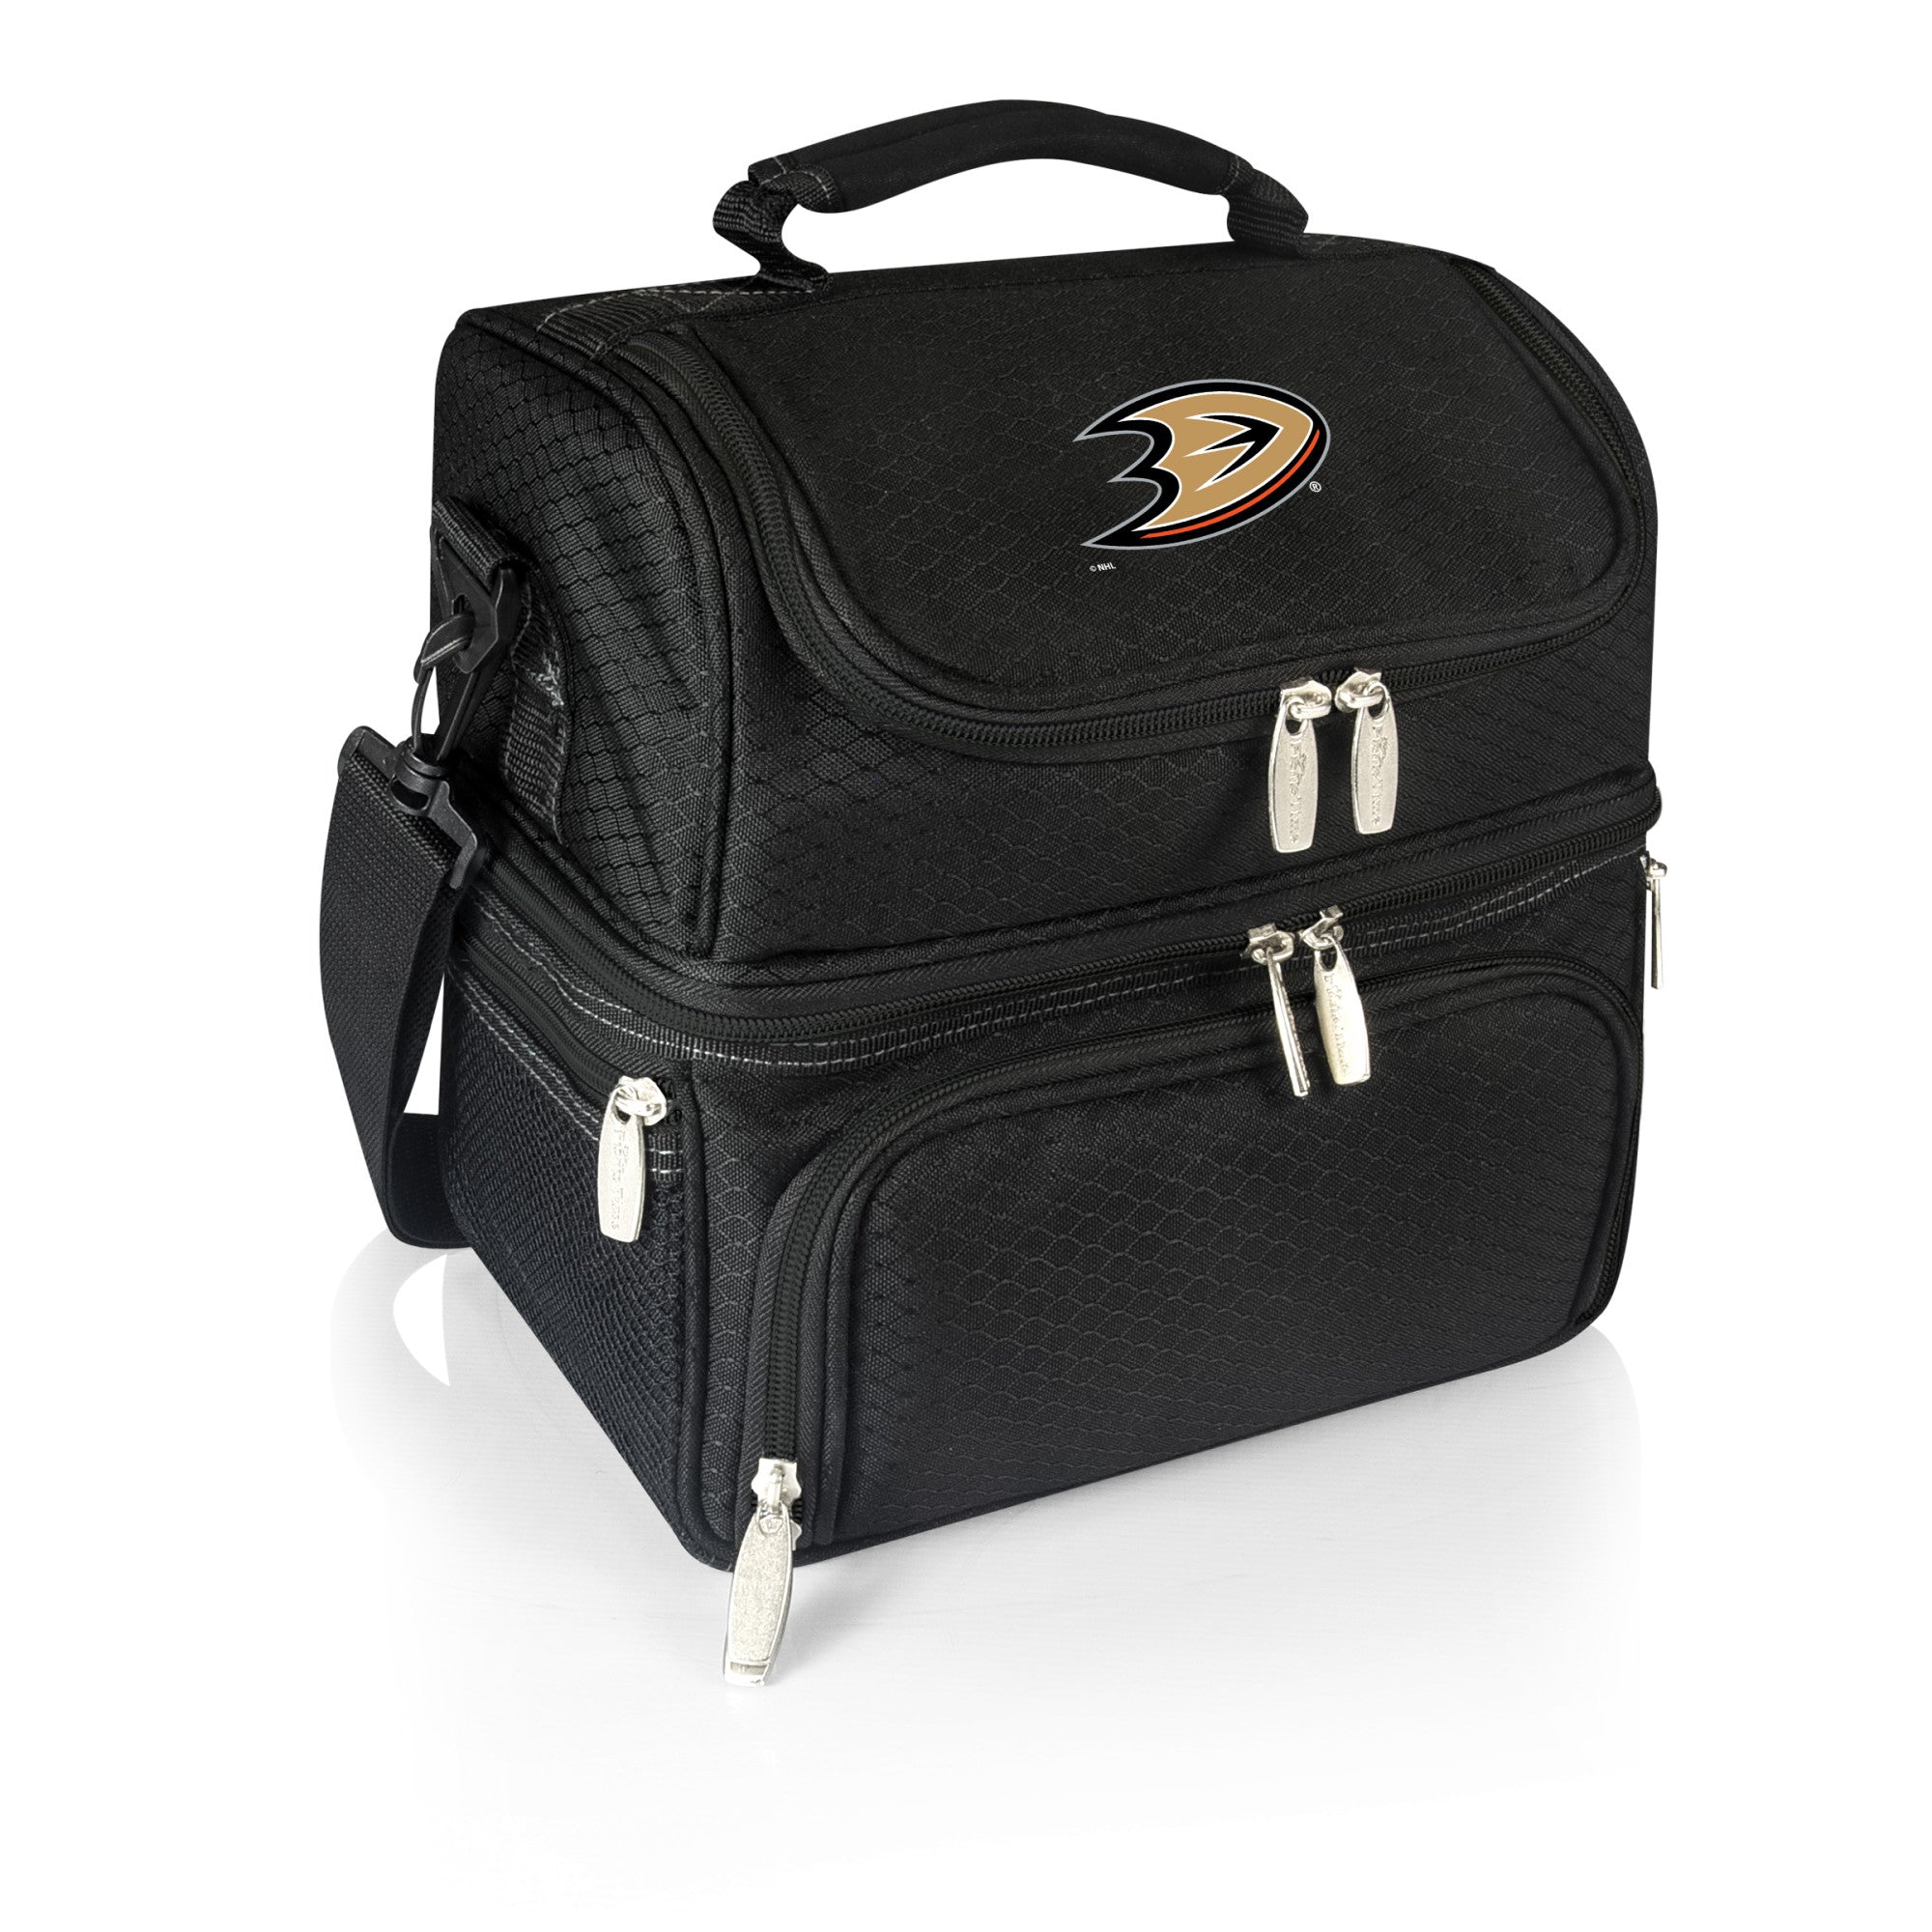 Anaheim Ducks - Pranzo Lunch Bag Cooler with Utensils